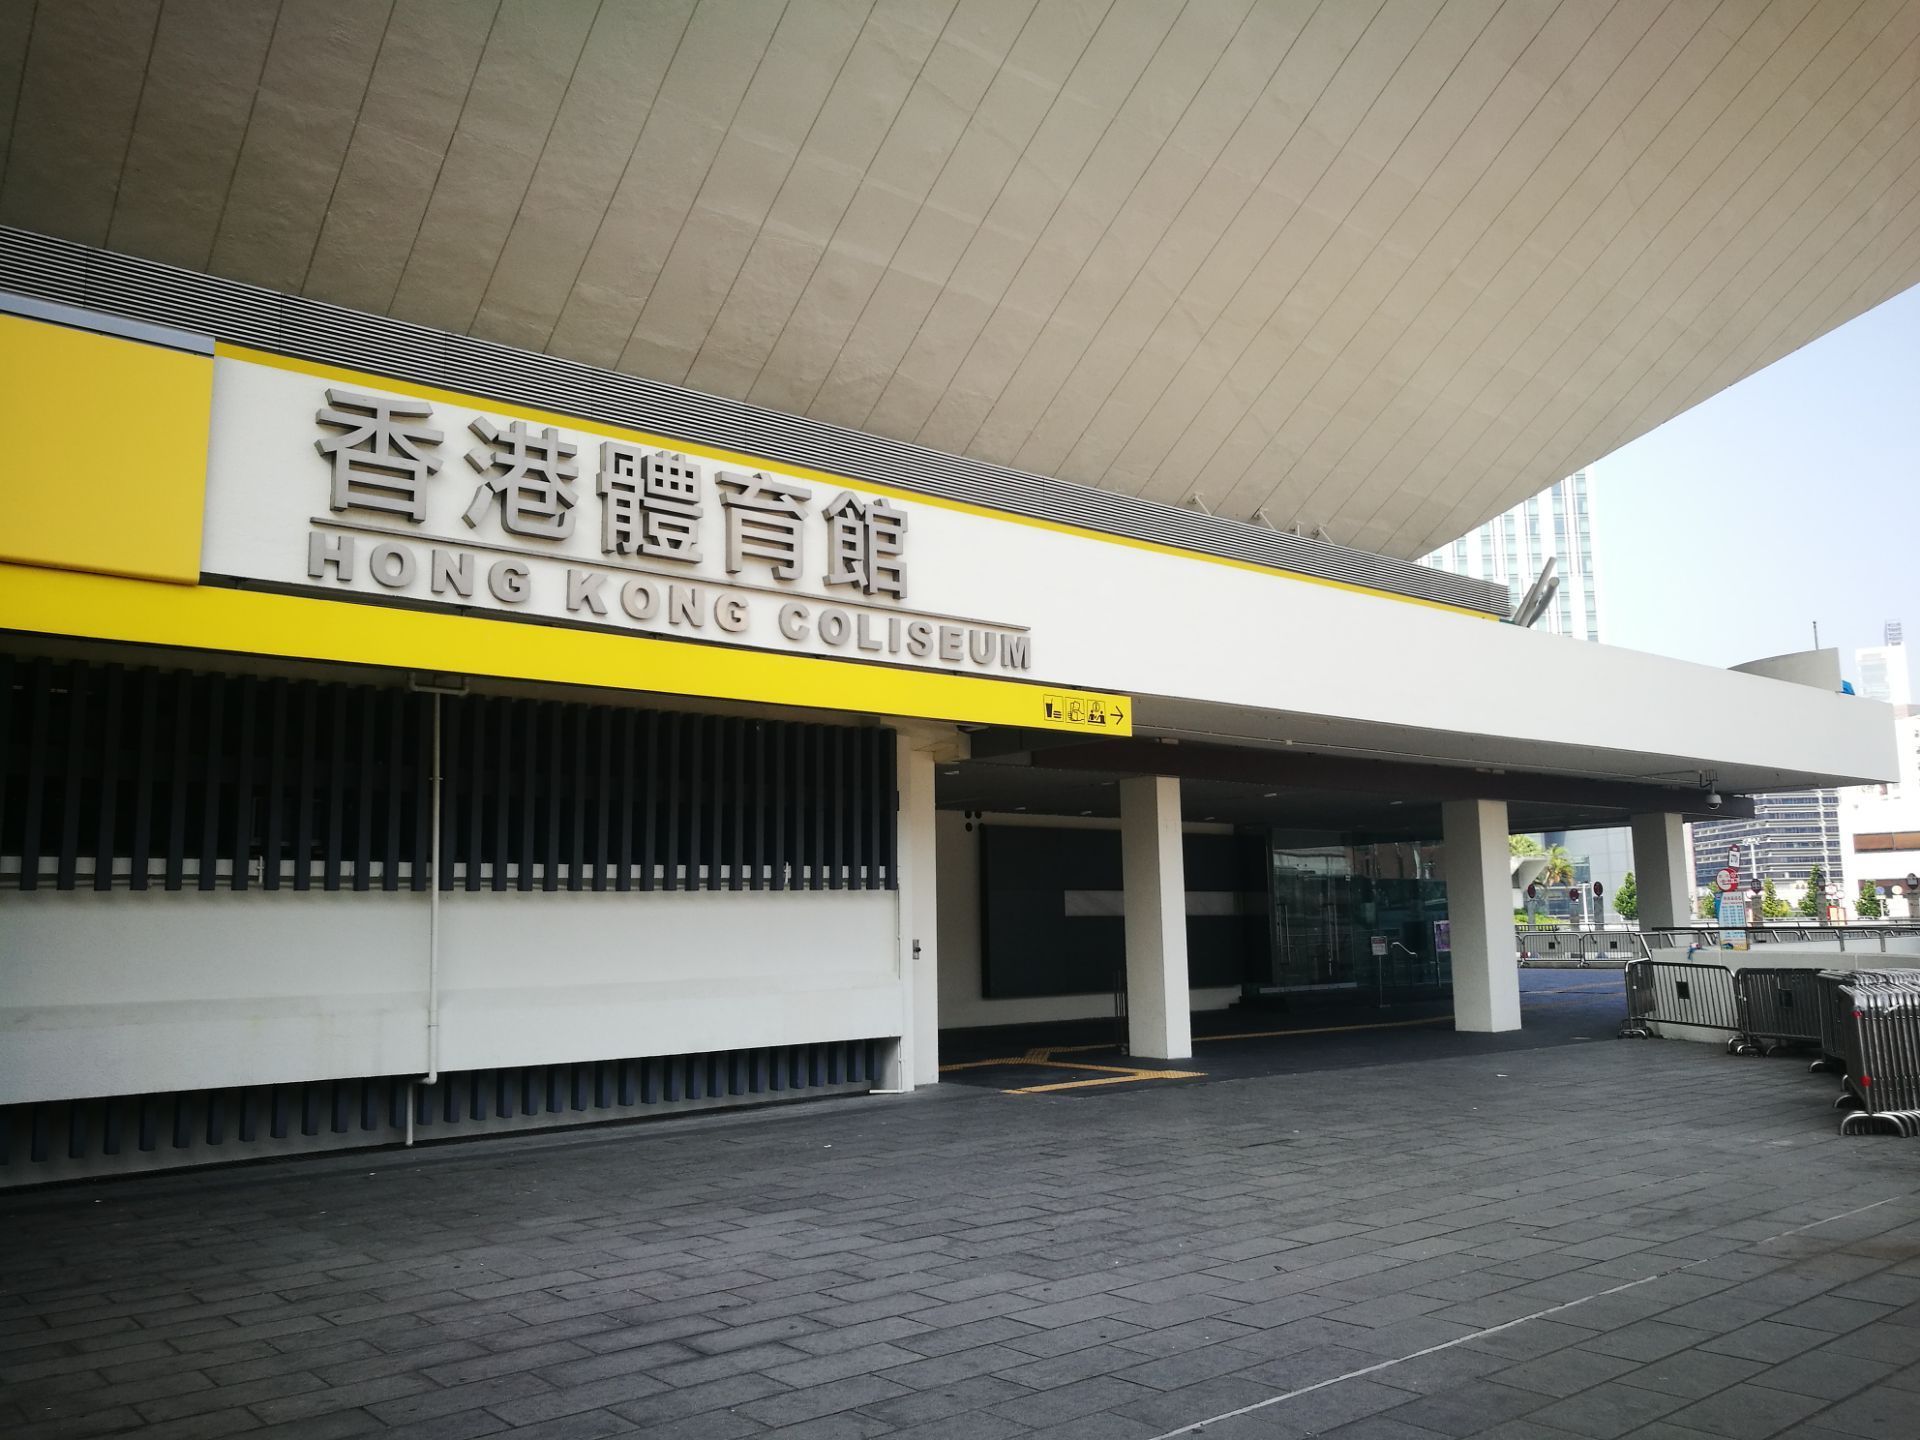 这座体育馆就是著名的红馆香港体育馆的名气反而不如红馆高因为这是